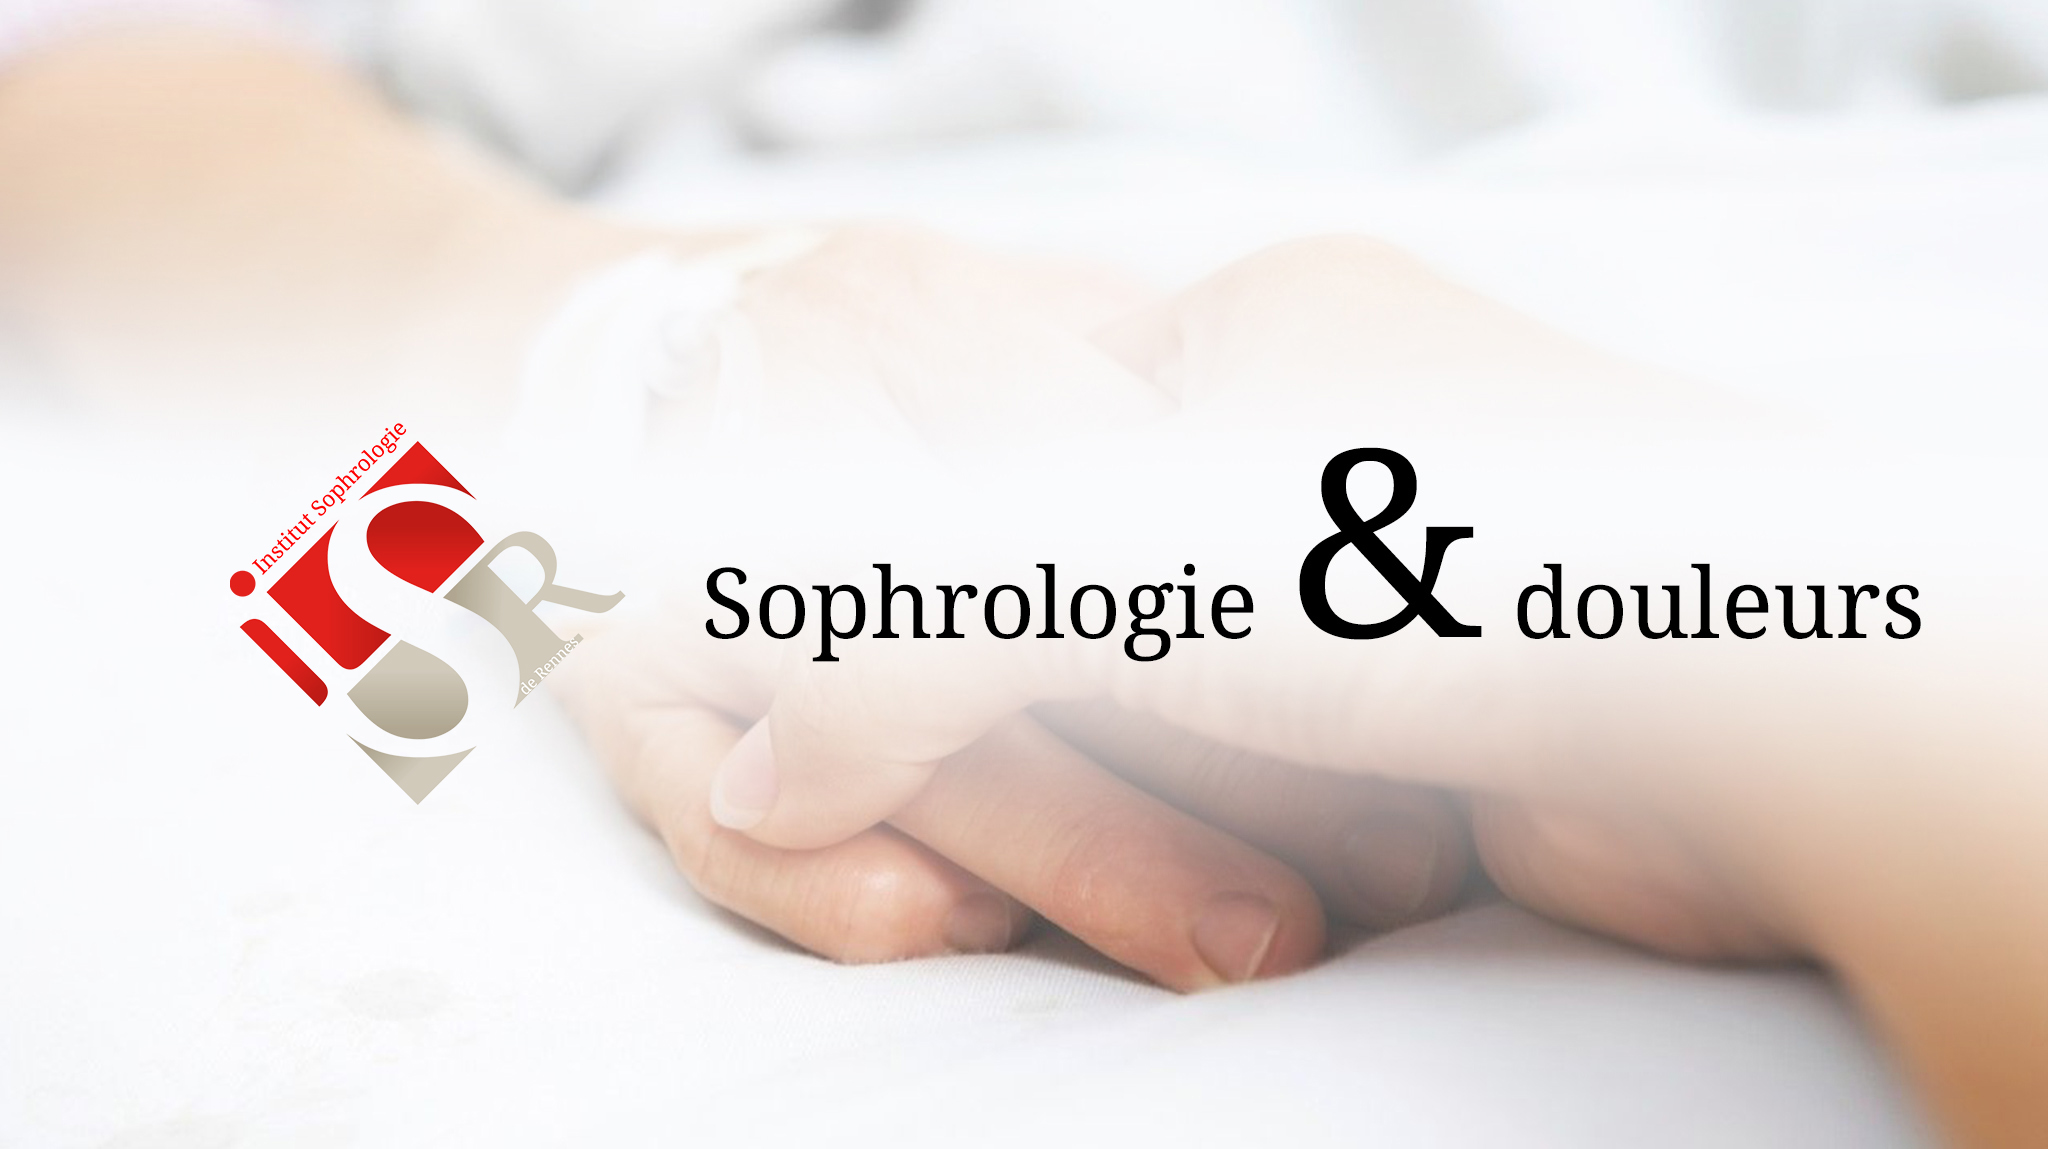 Sophrologie douleur et sophrologie cancer